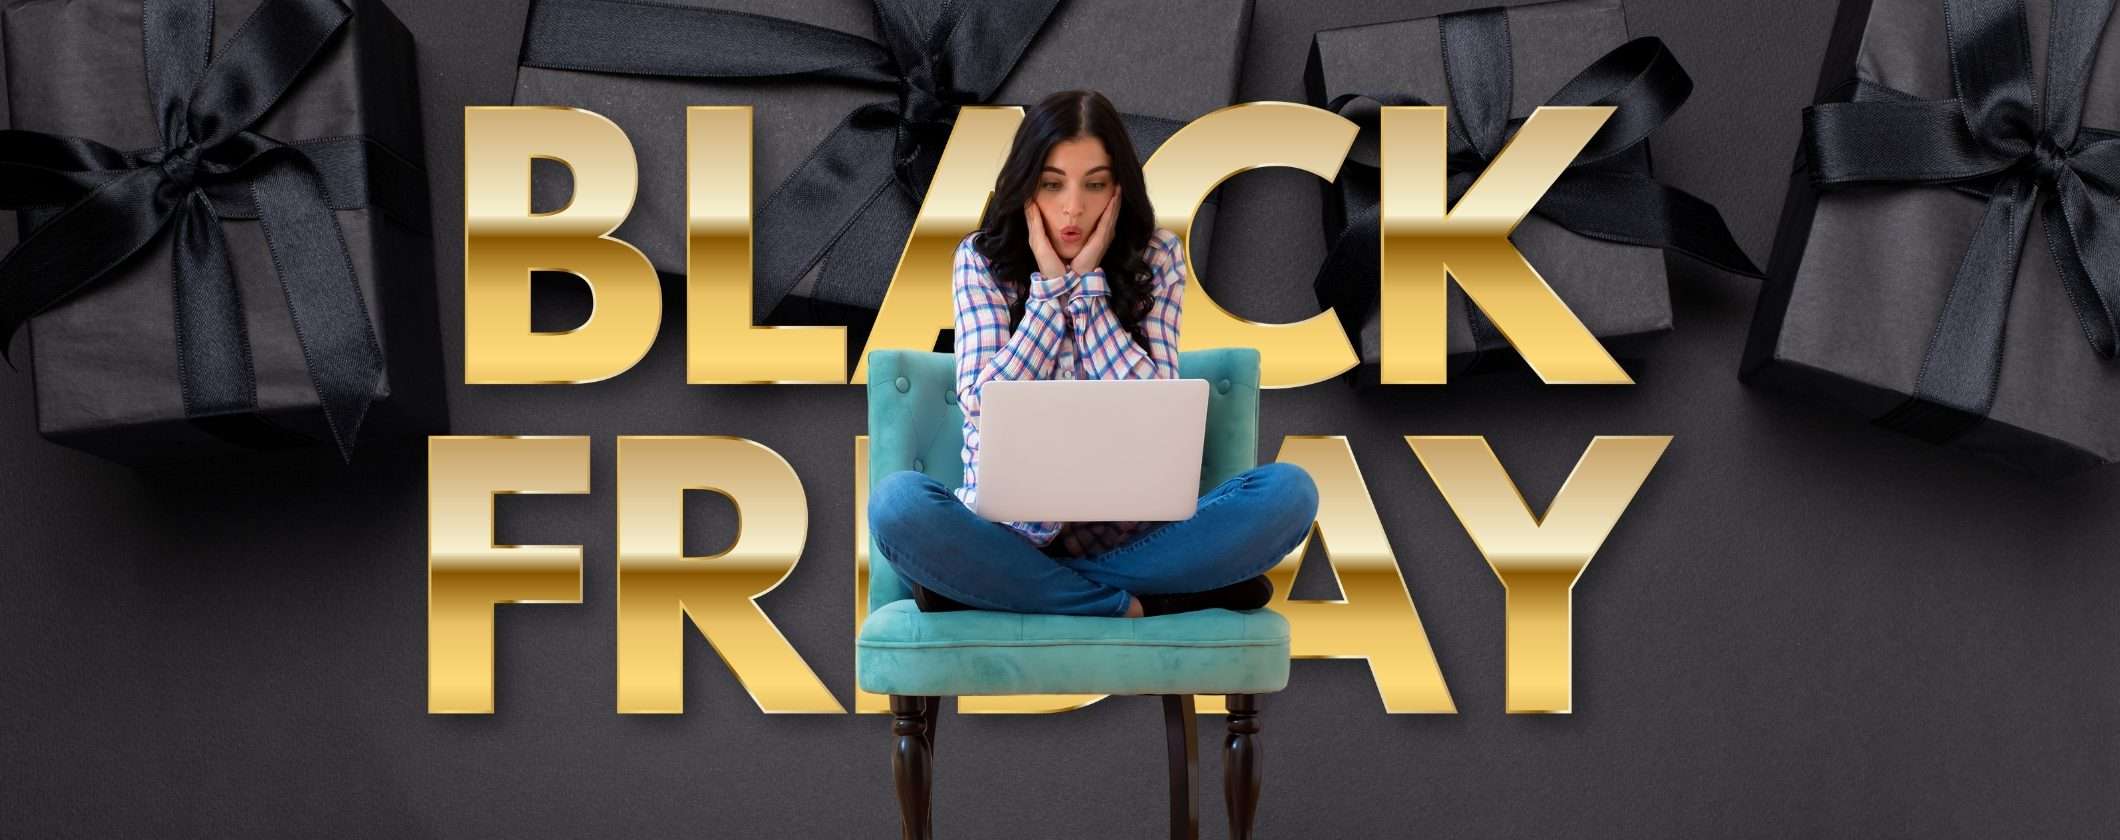 Black Friday e Cyber Monday: come evitare le truffe online